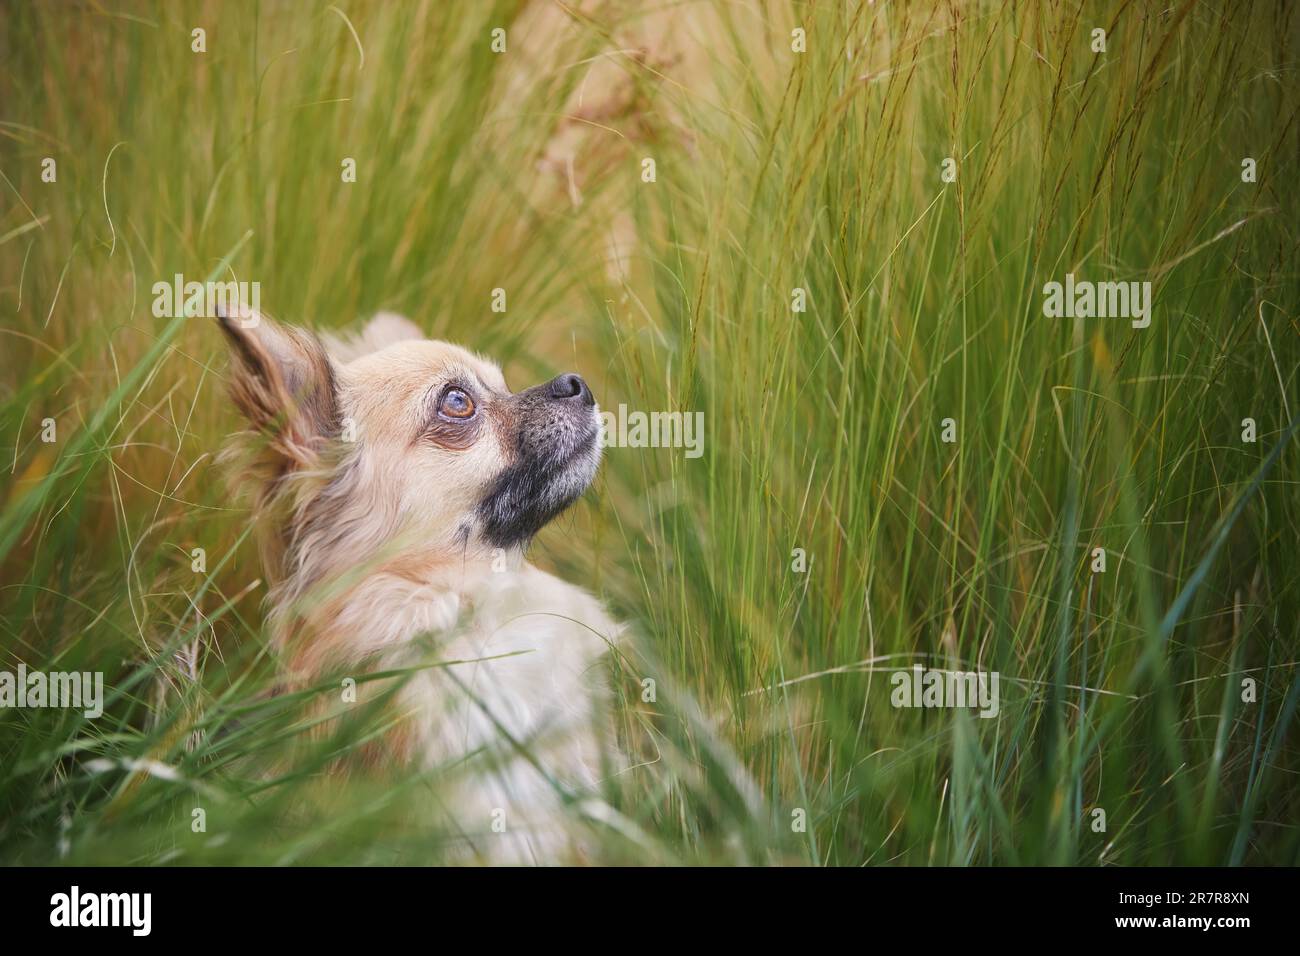 Ritratto di un lungo chihuahua capelli. Piccolo cane che guarda in alto da erba alta. Foto Stock